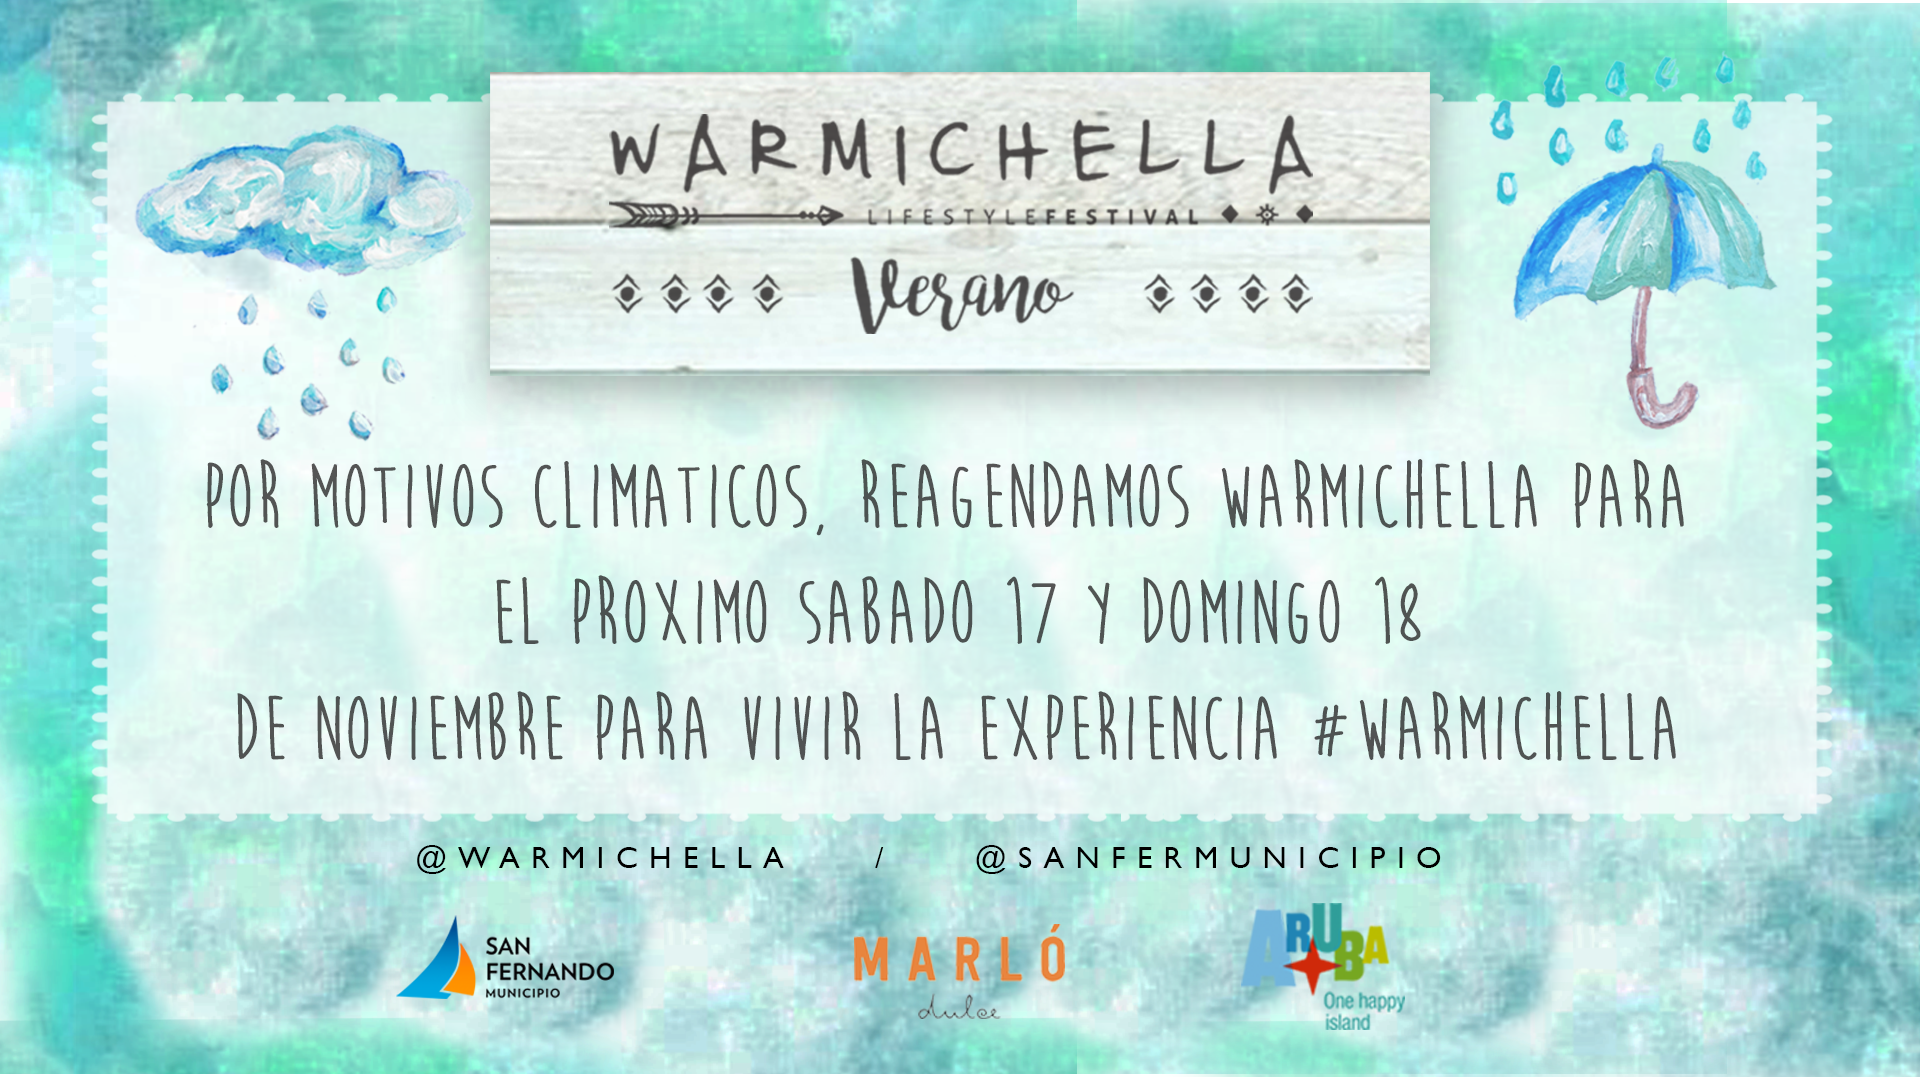  Llega el Warmichella Lifestyle Festival 2018